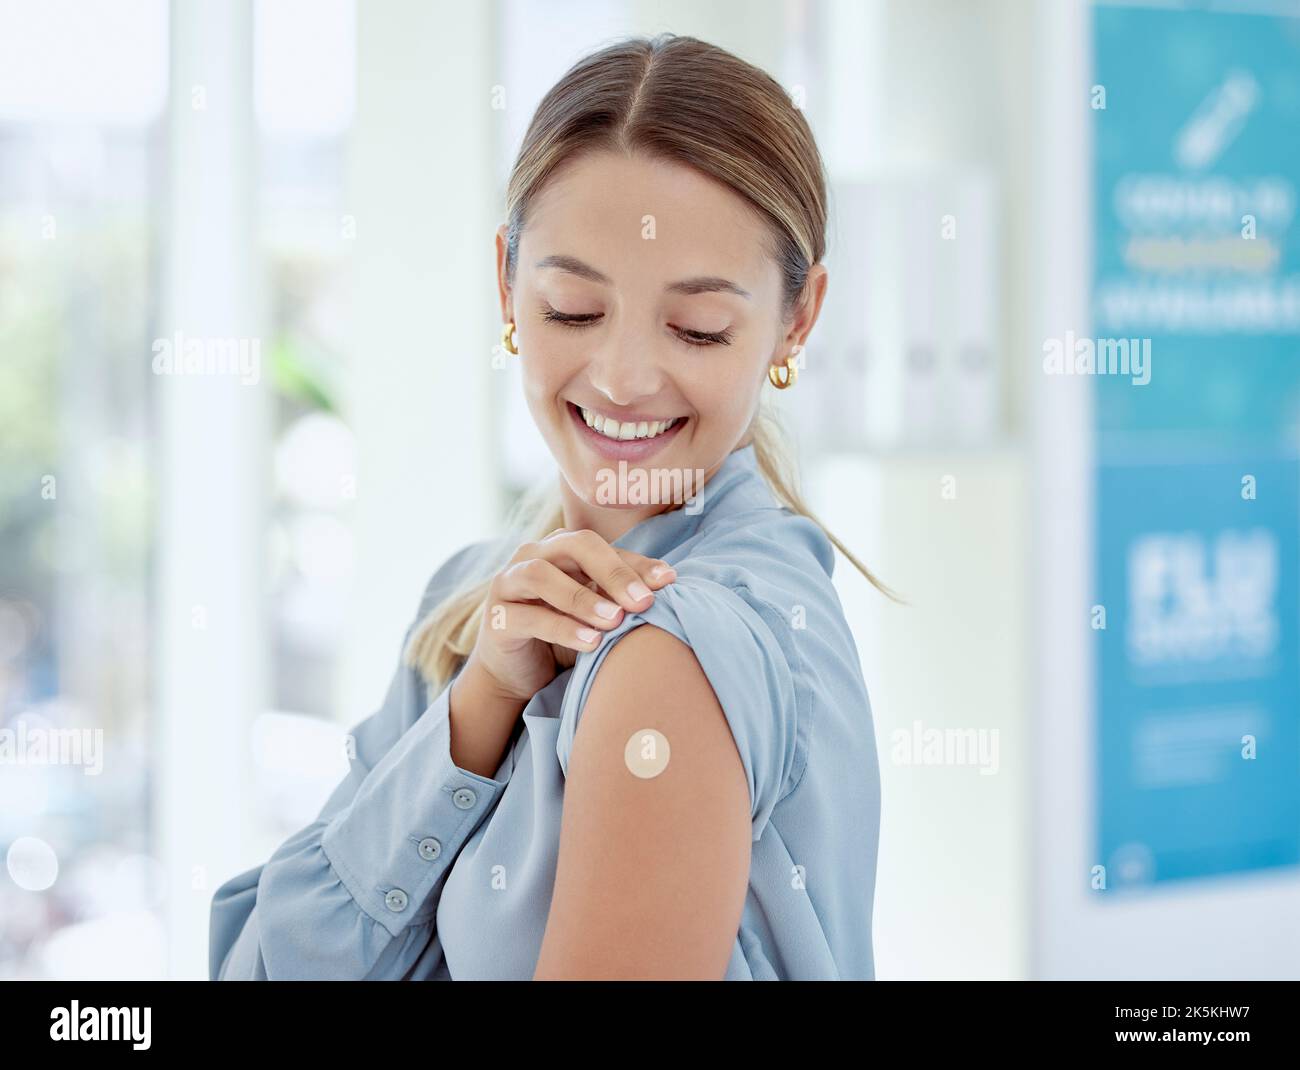 Covid, vaccin et plâtre avec une femme de santé dans un hôpital après avoir reçu une injection, un rappel ou une injection médicale. Injection, immunité et médecine Banque D'Images